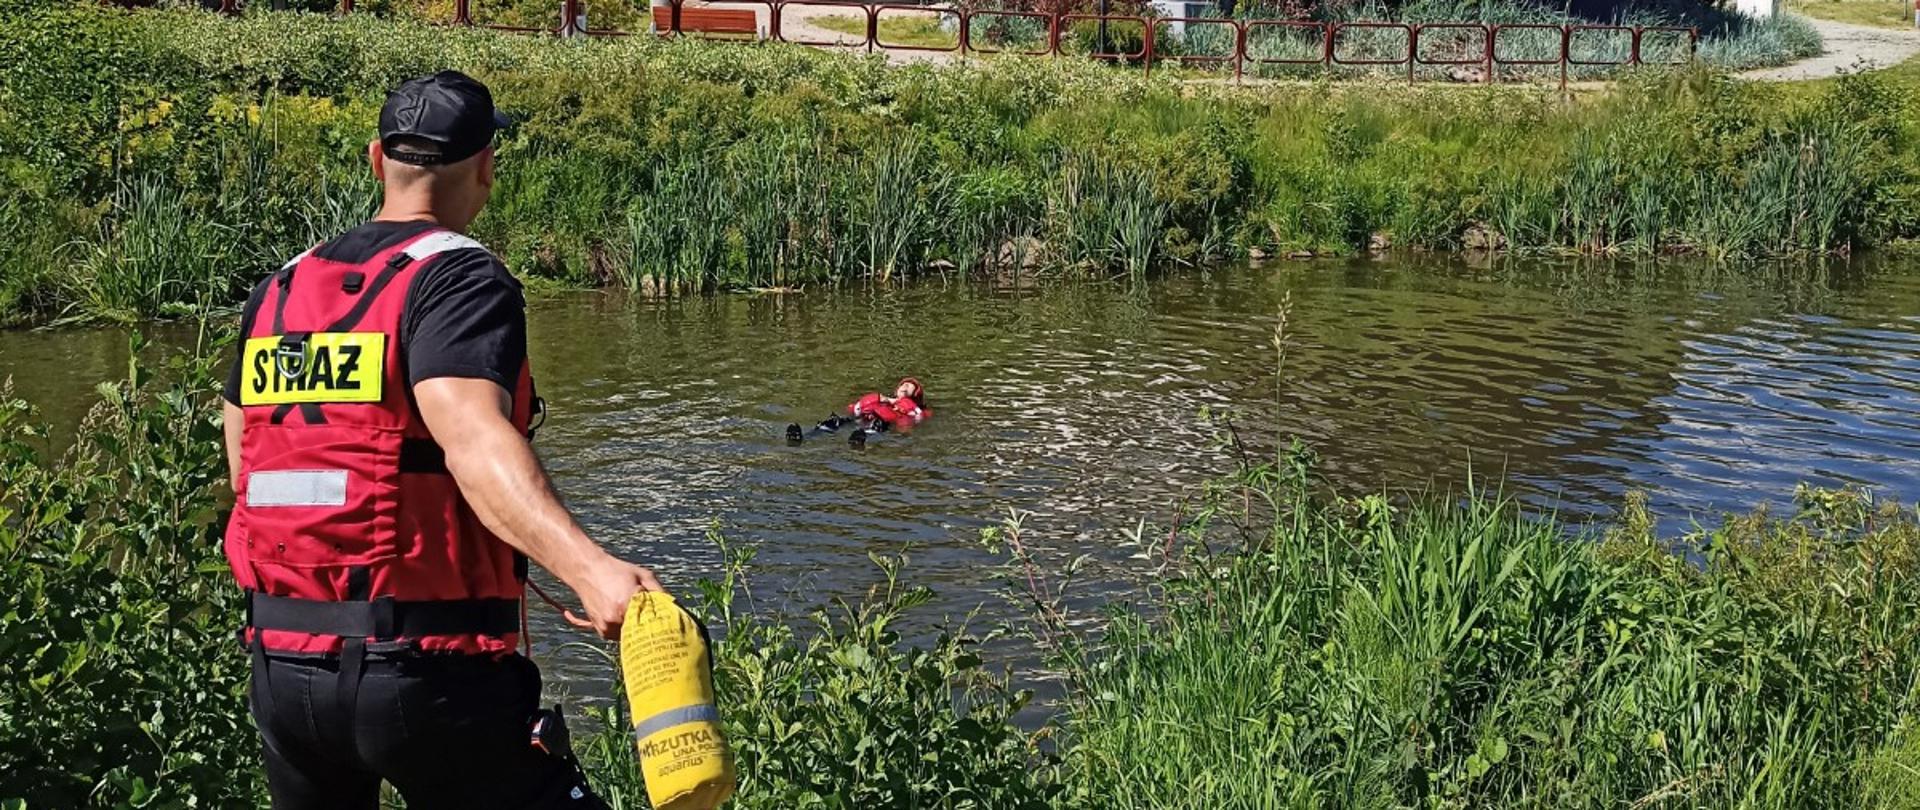 ratownik PSP rzucający rzutką do osoby znajdującej się w wodzie